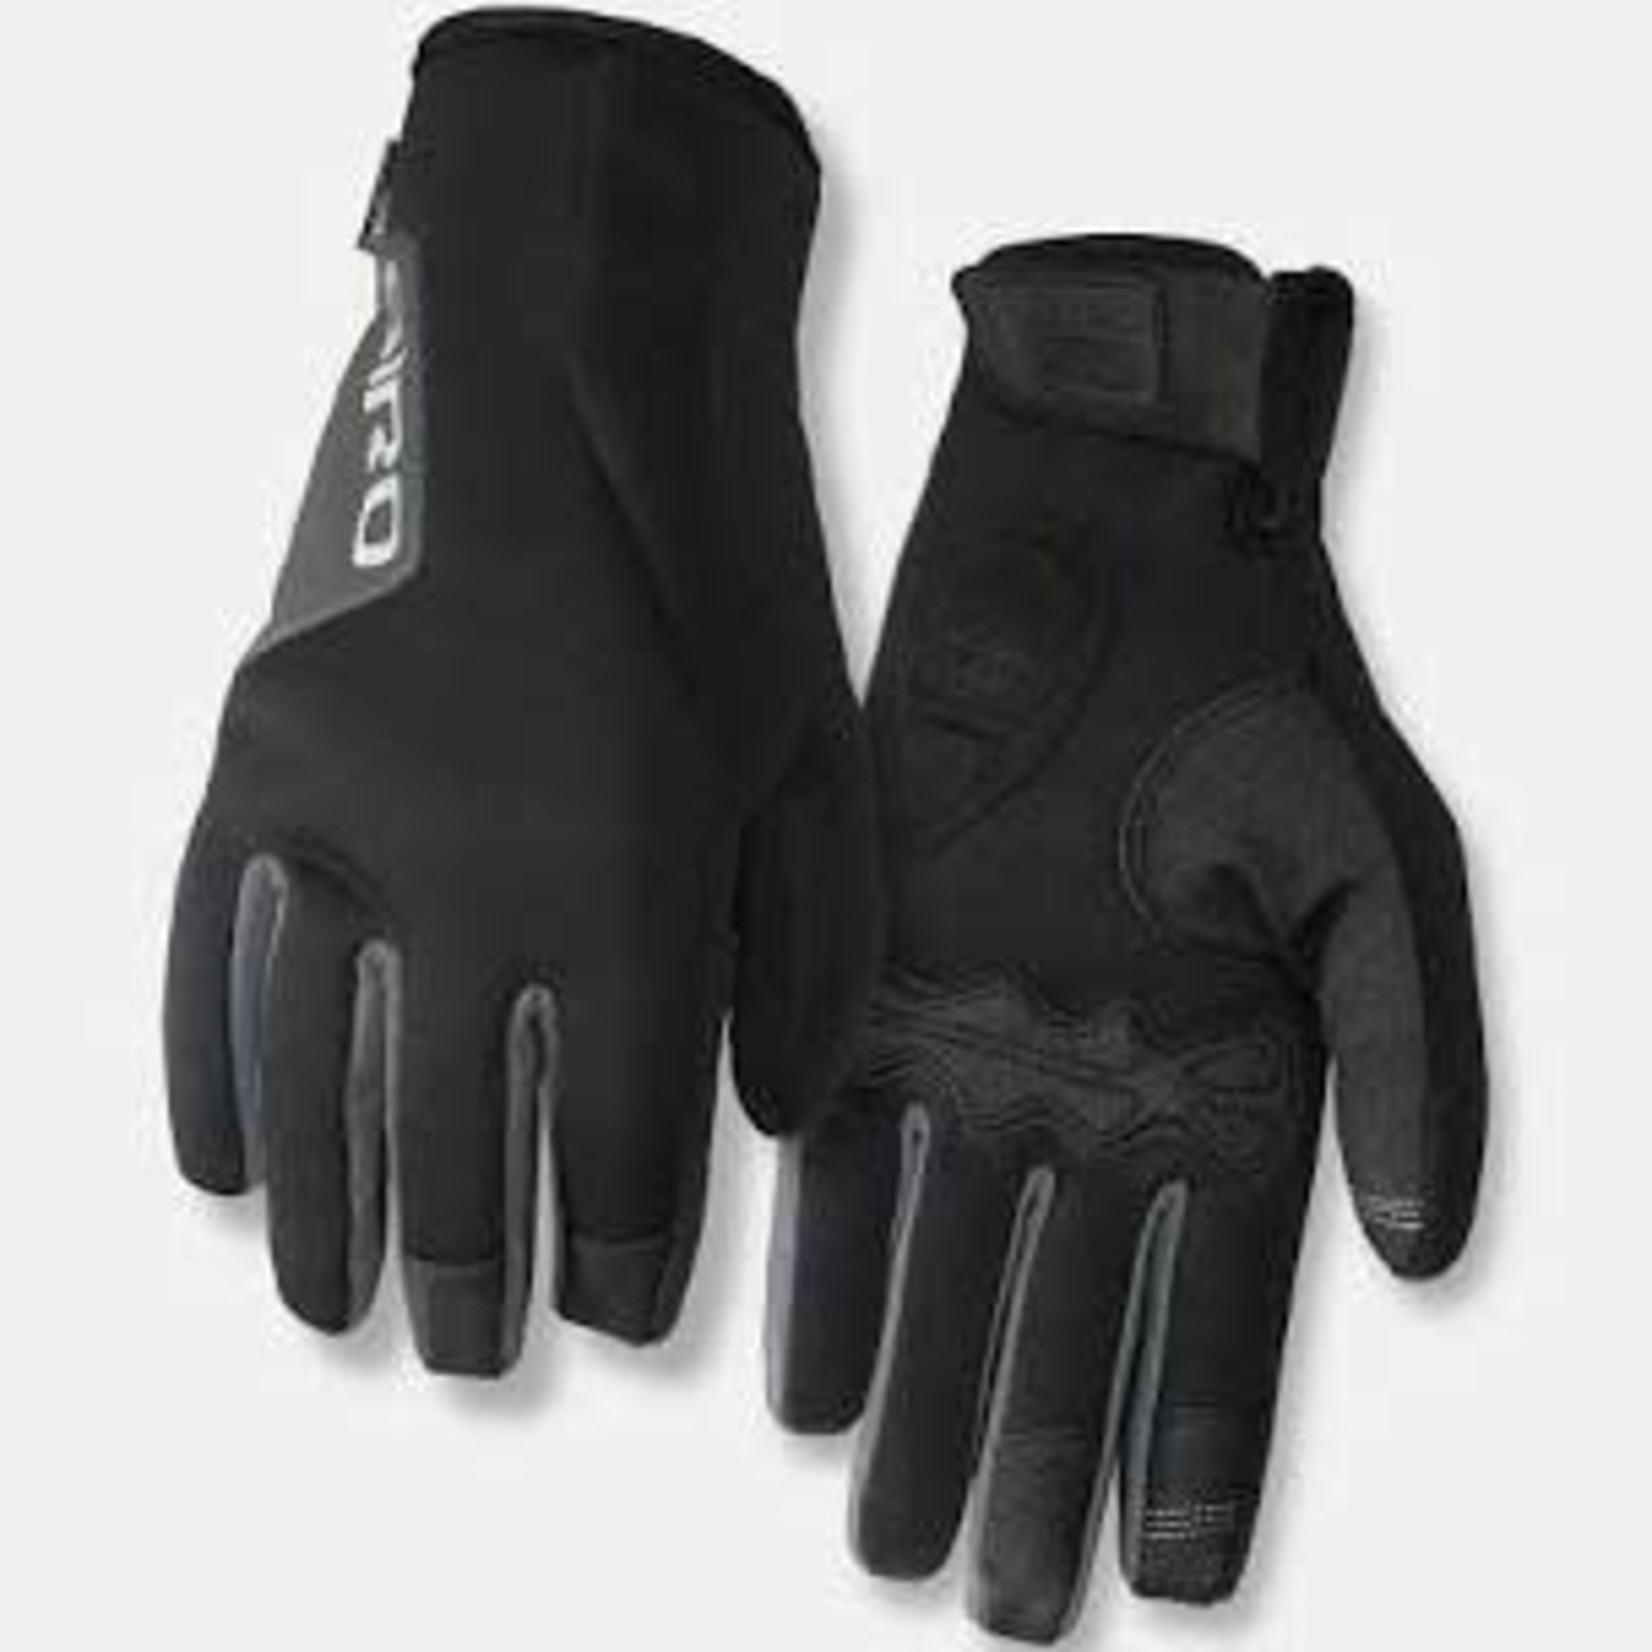 Giro Giro Ambient Gel Winter Cycling Gloves